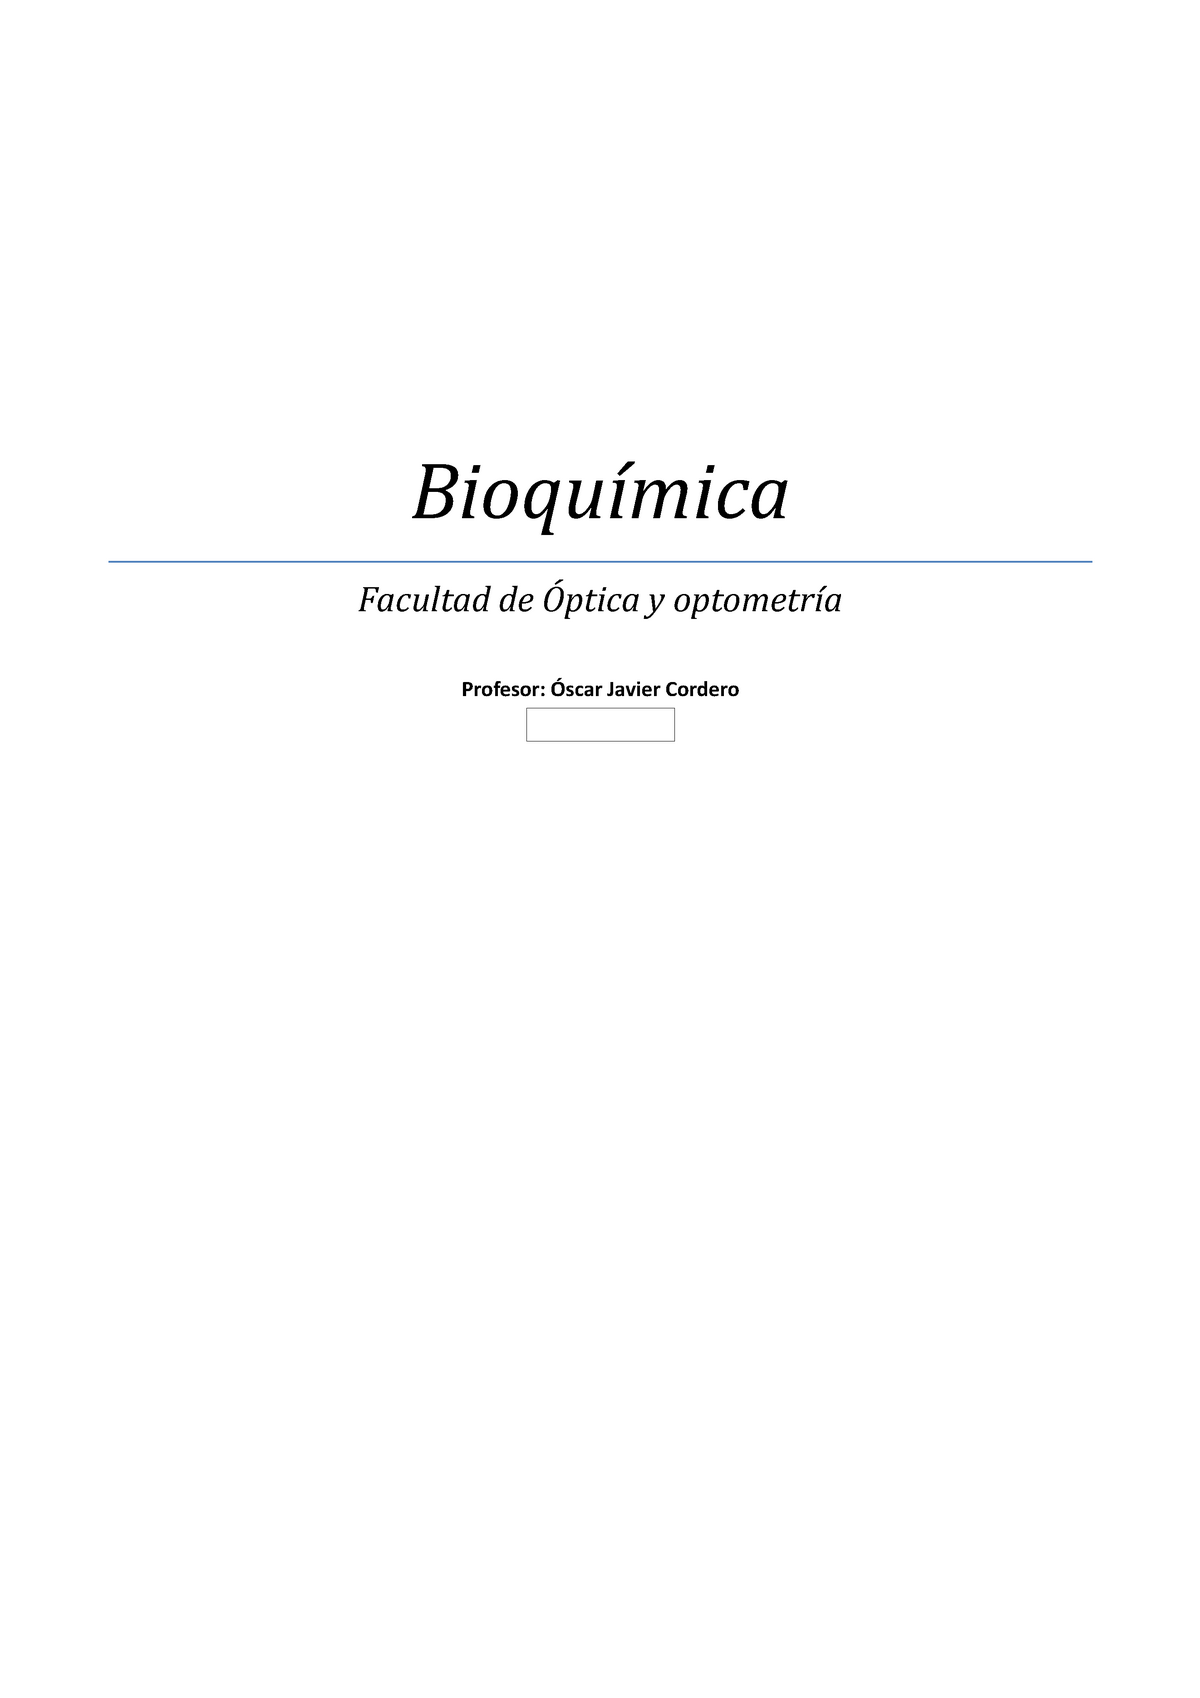 BioquiÍmica Resumen Summary Bioquímica Facultad De Y Profesor